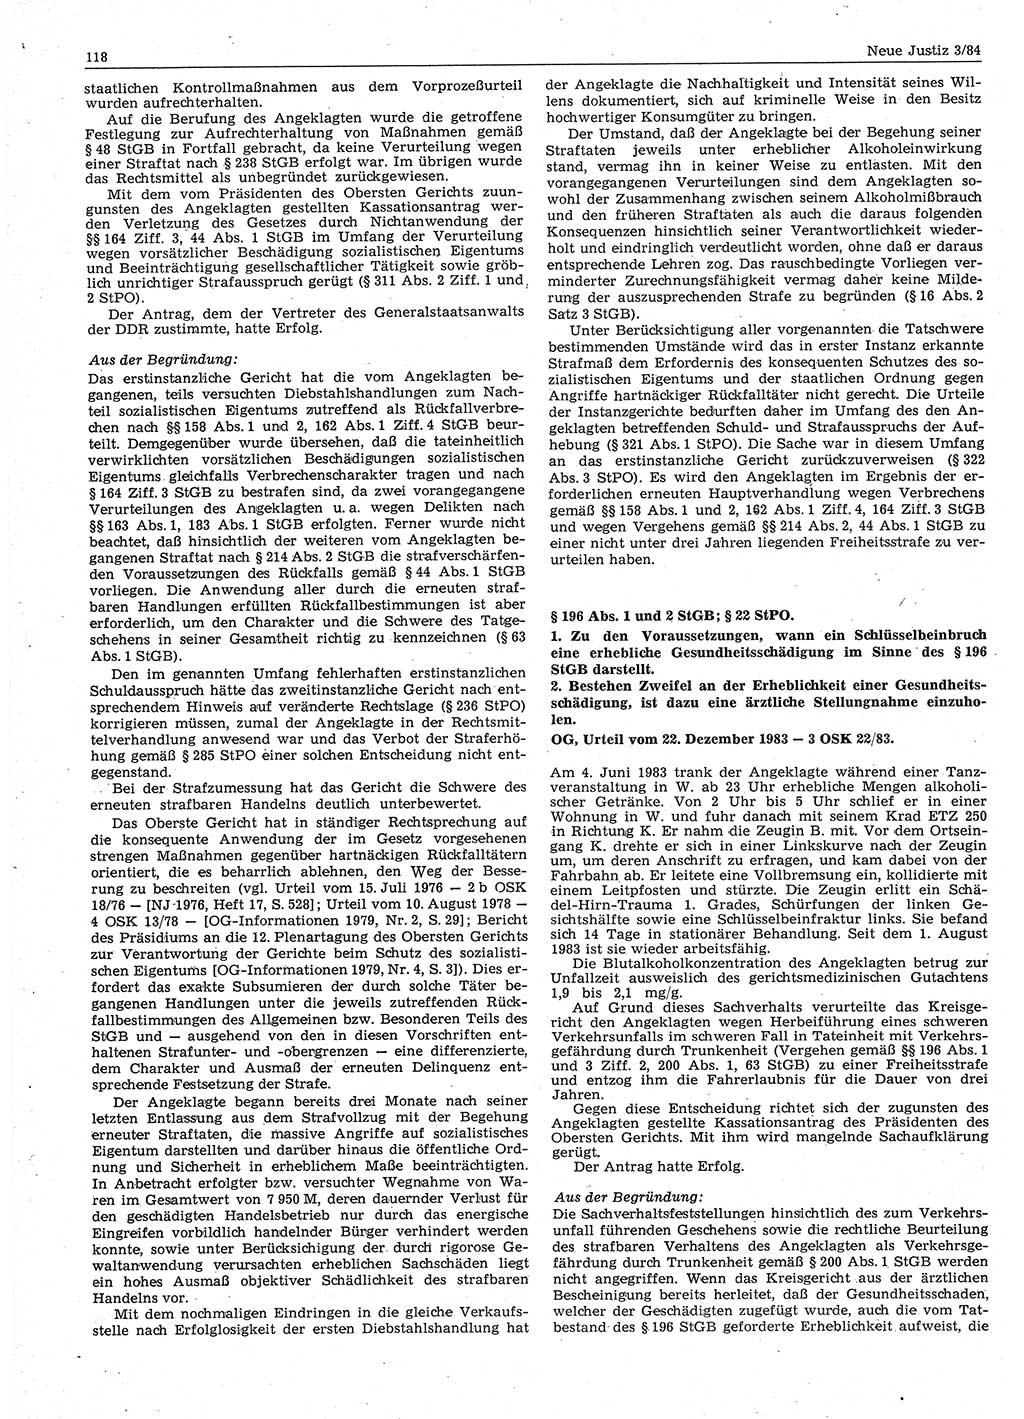 Neue Justiz (NJ), Zeitschrift für sozialistisches Recht und Gesetzlichkeit [Deutsche Demokratische Republik (DDR)], 38. Jahrgang 1984, Seite 118 (NJ DDR 1984, S. 118)